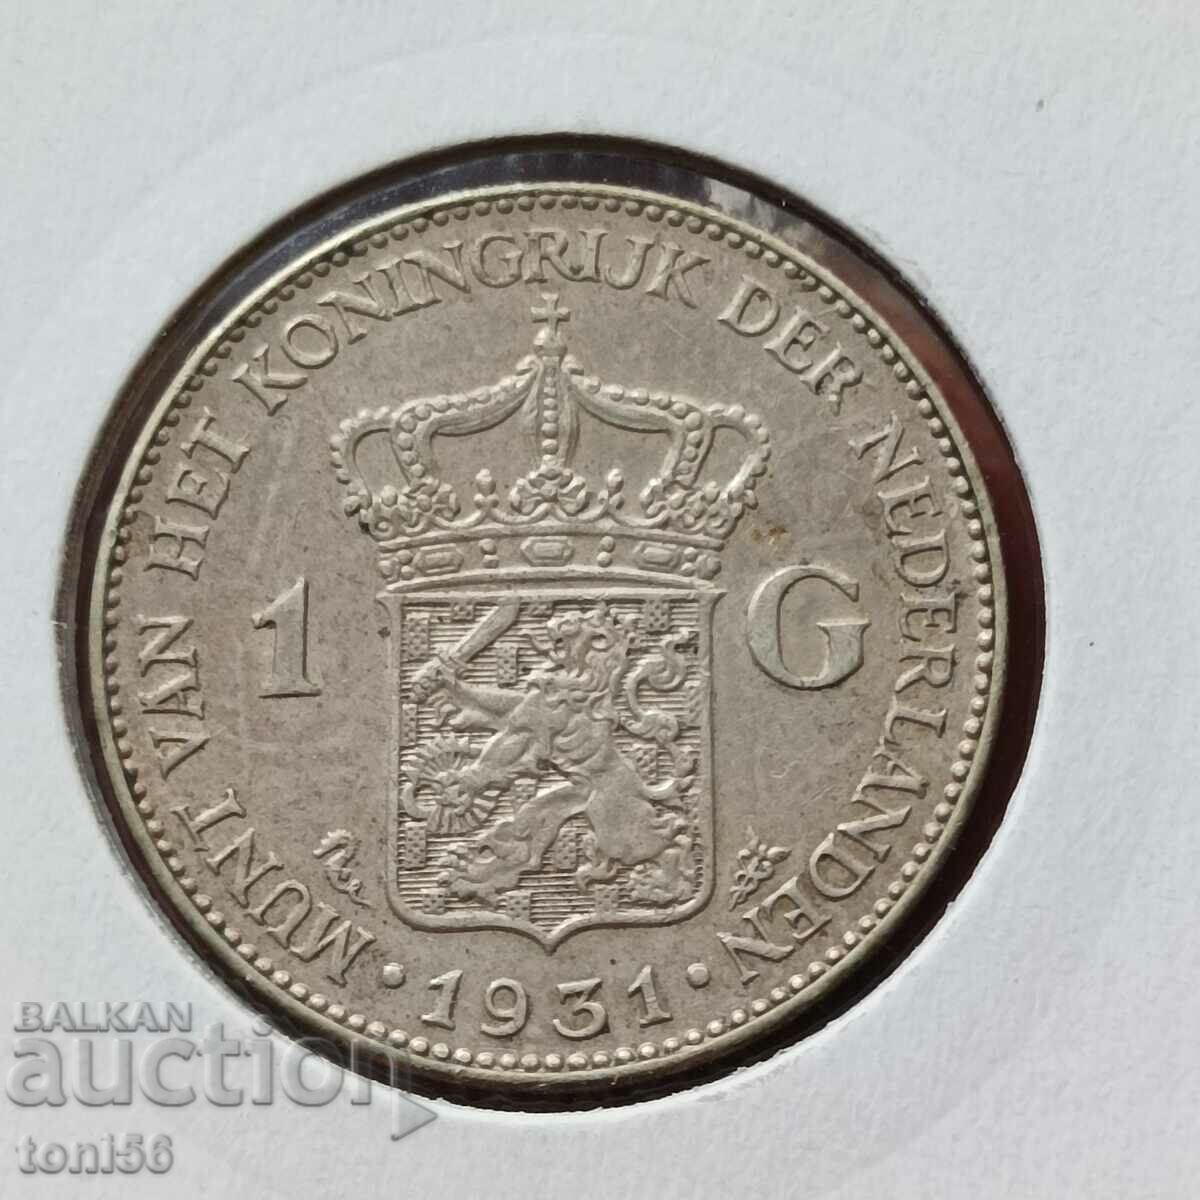 Netherlands 1 Gulden 1931 aUNC Silver